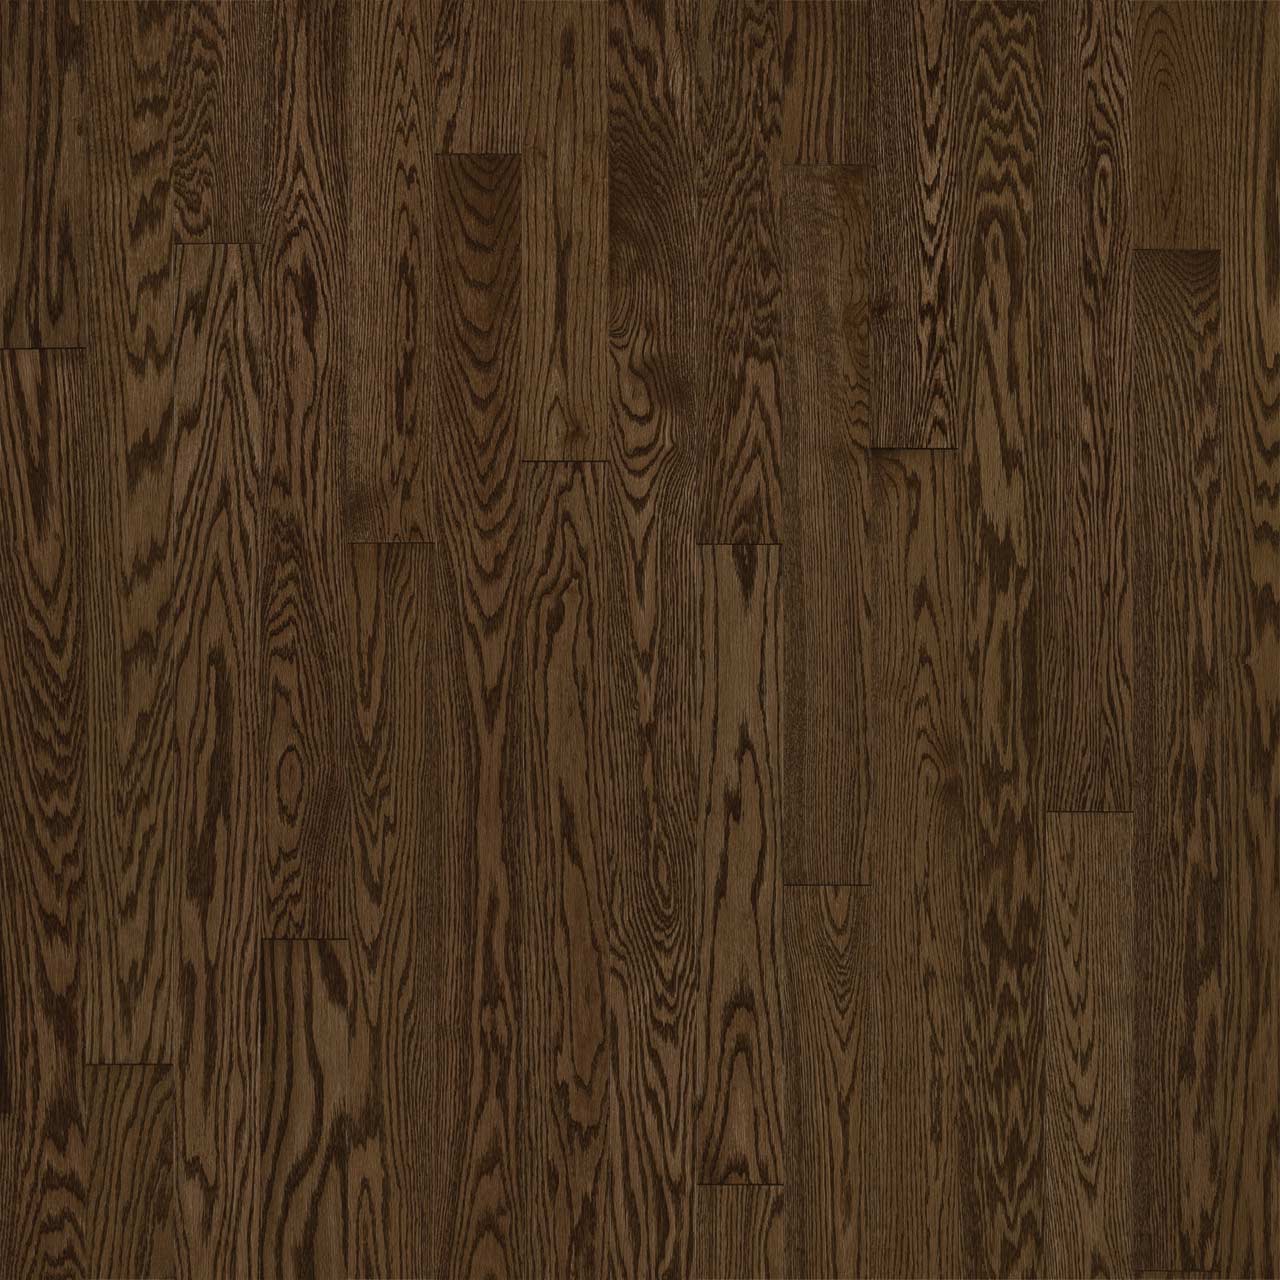 Hardwood SolidGenius & Engenius Red Oak Sample 6